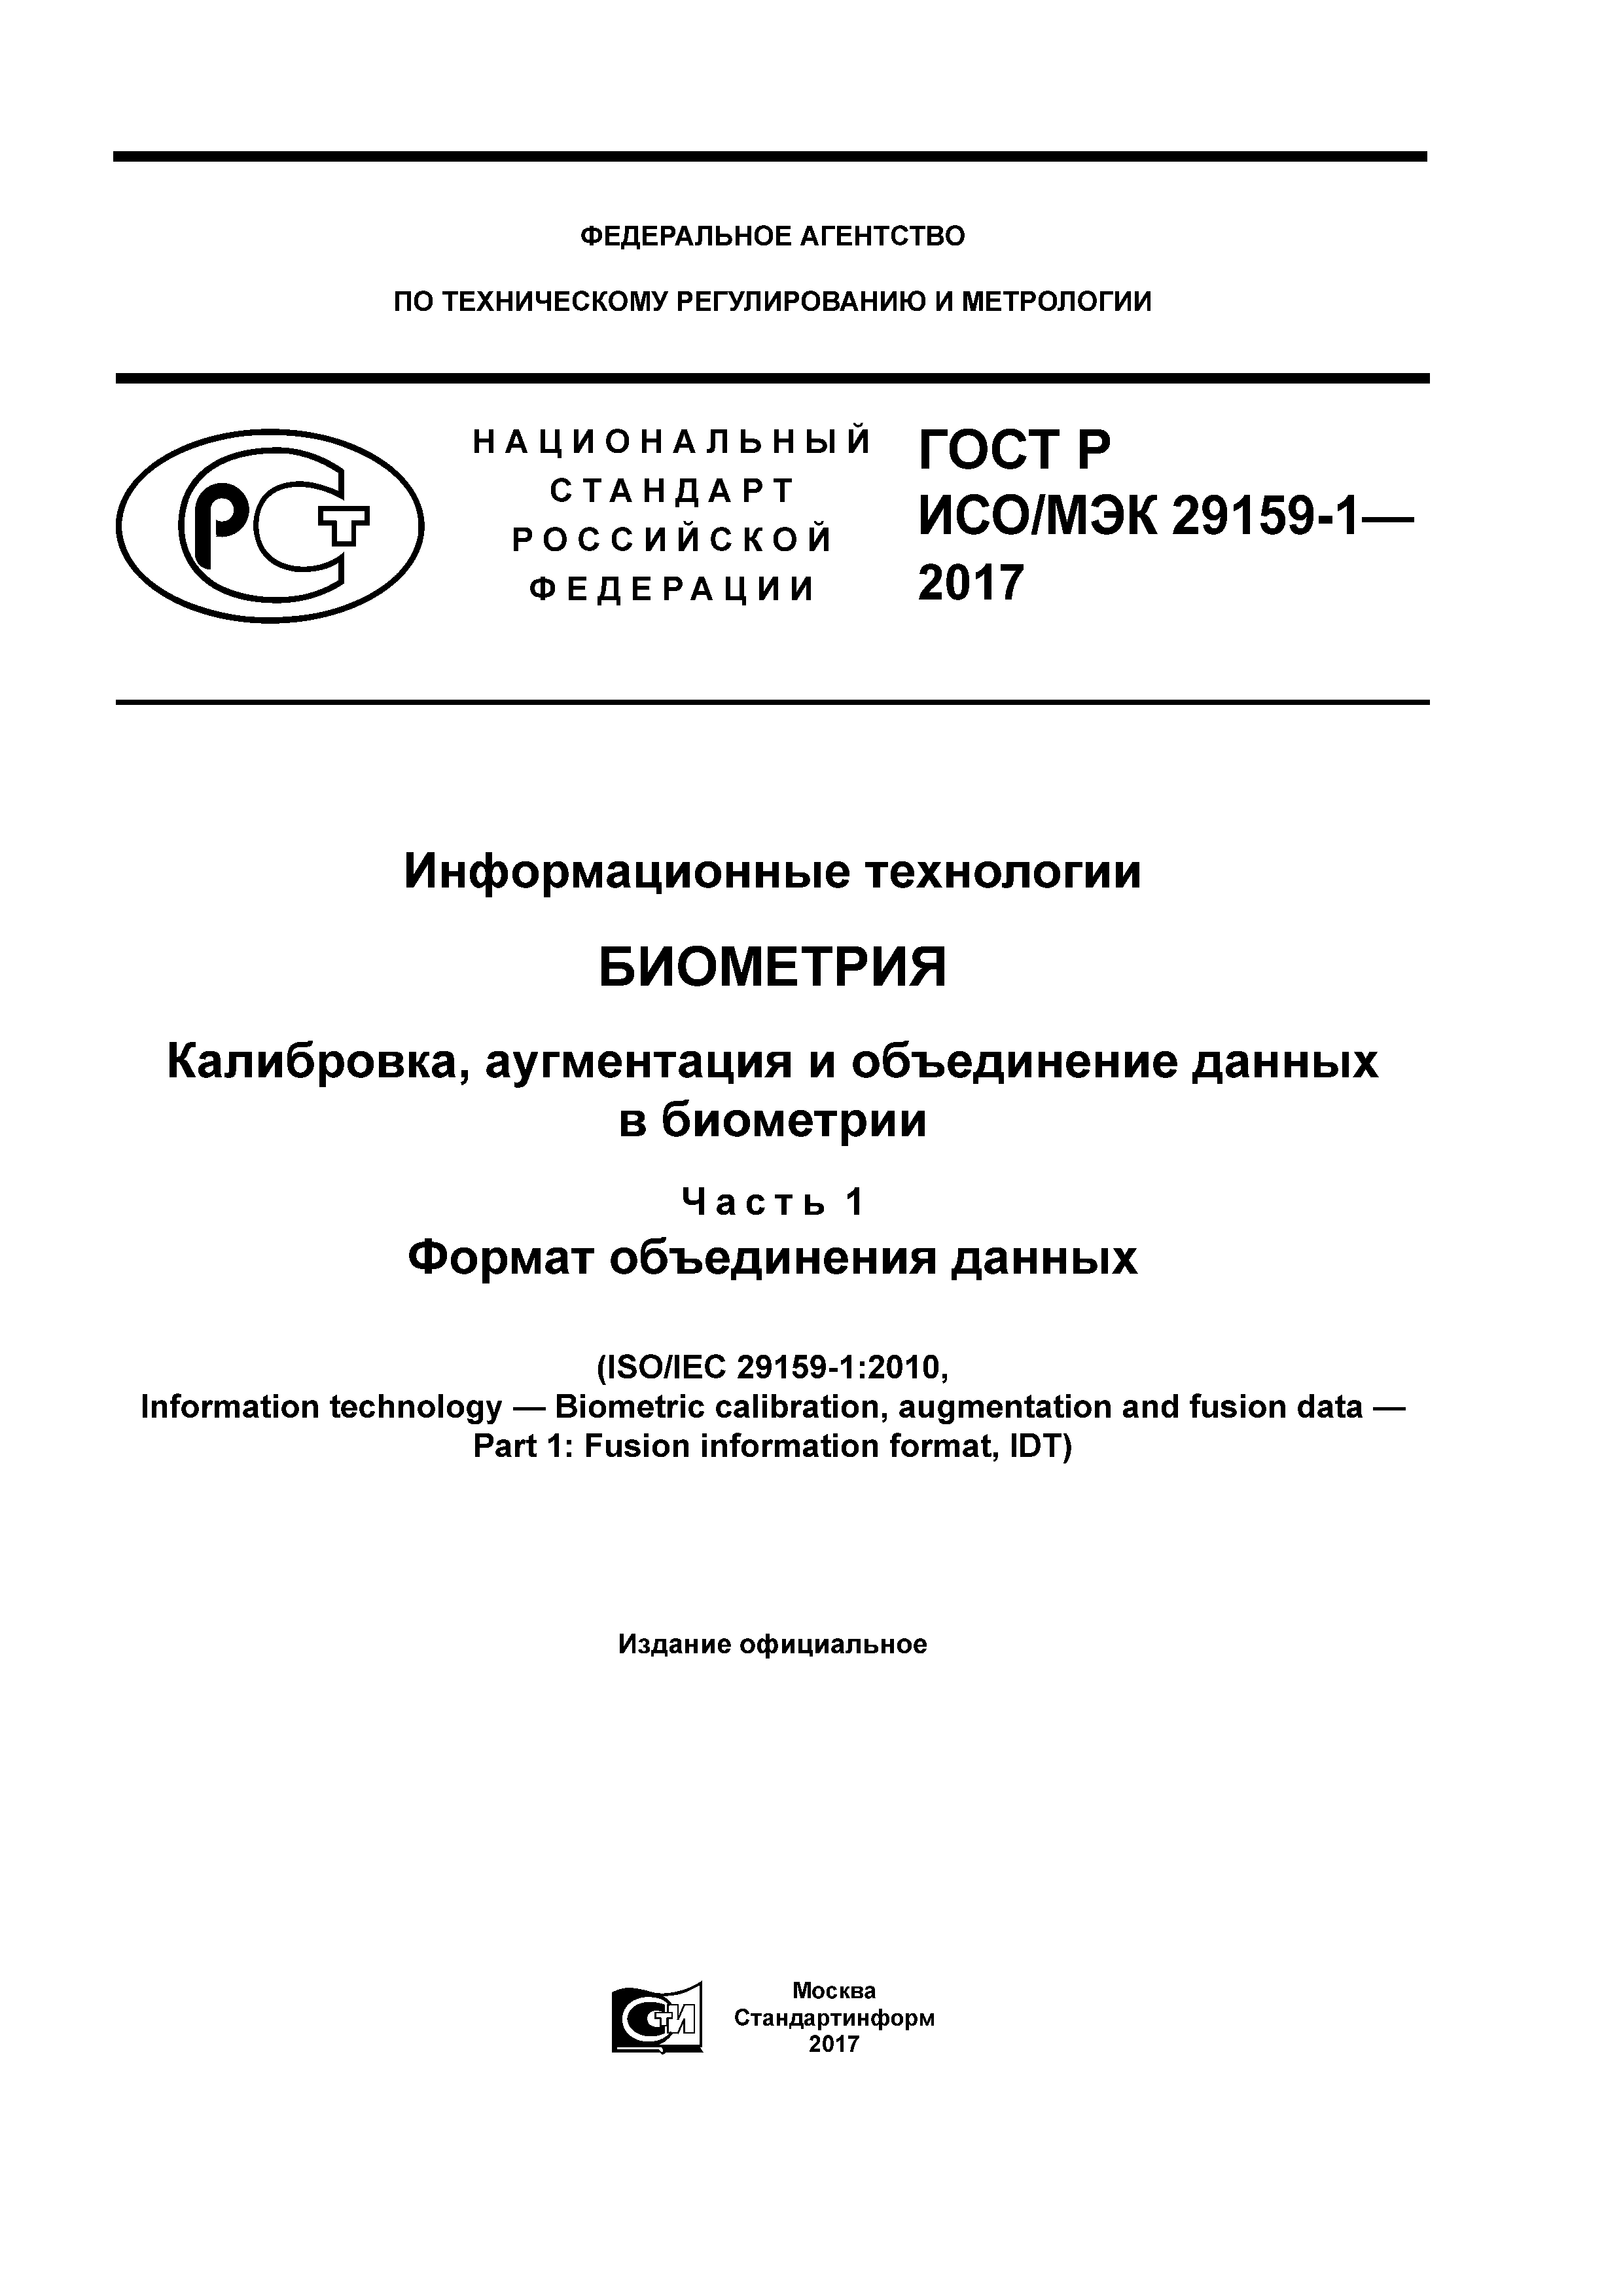 ГОСТ Р ИСО/МЭК 29159-1-2017